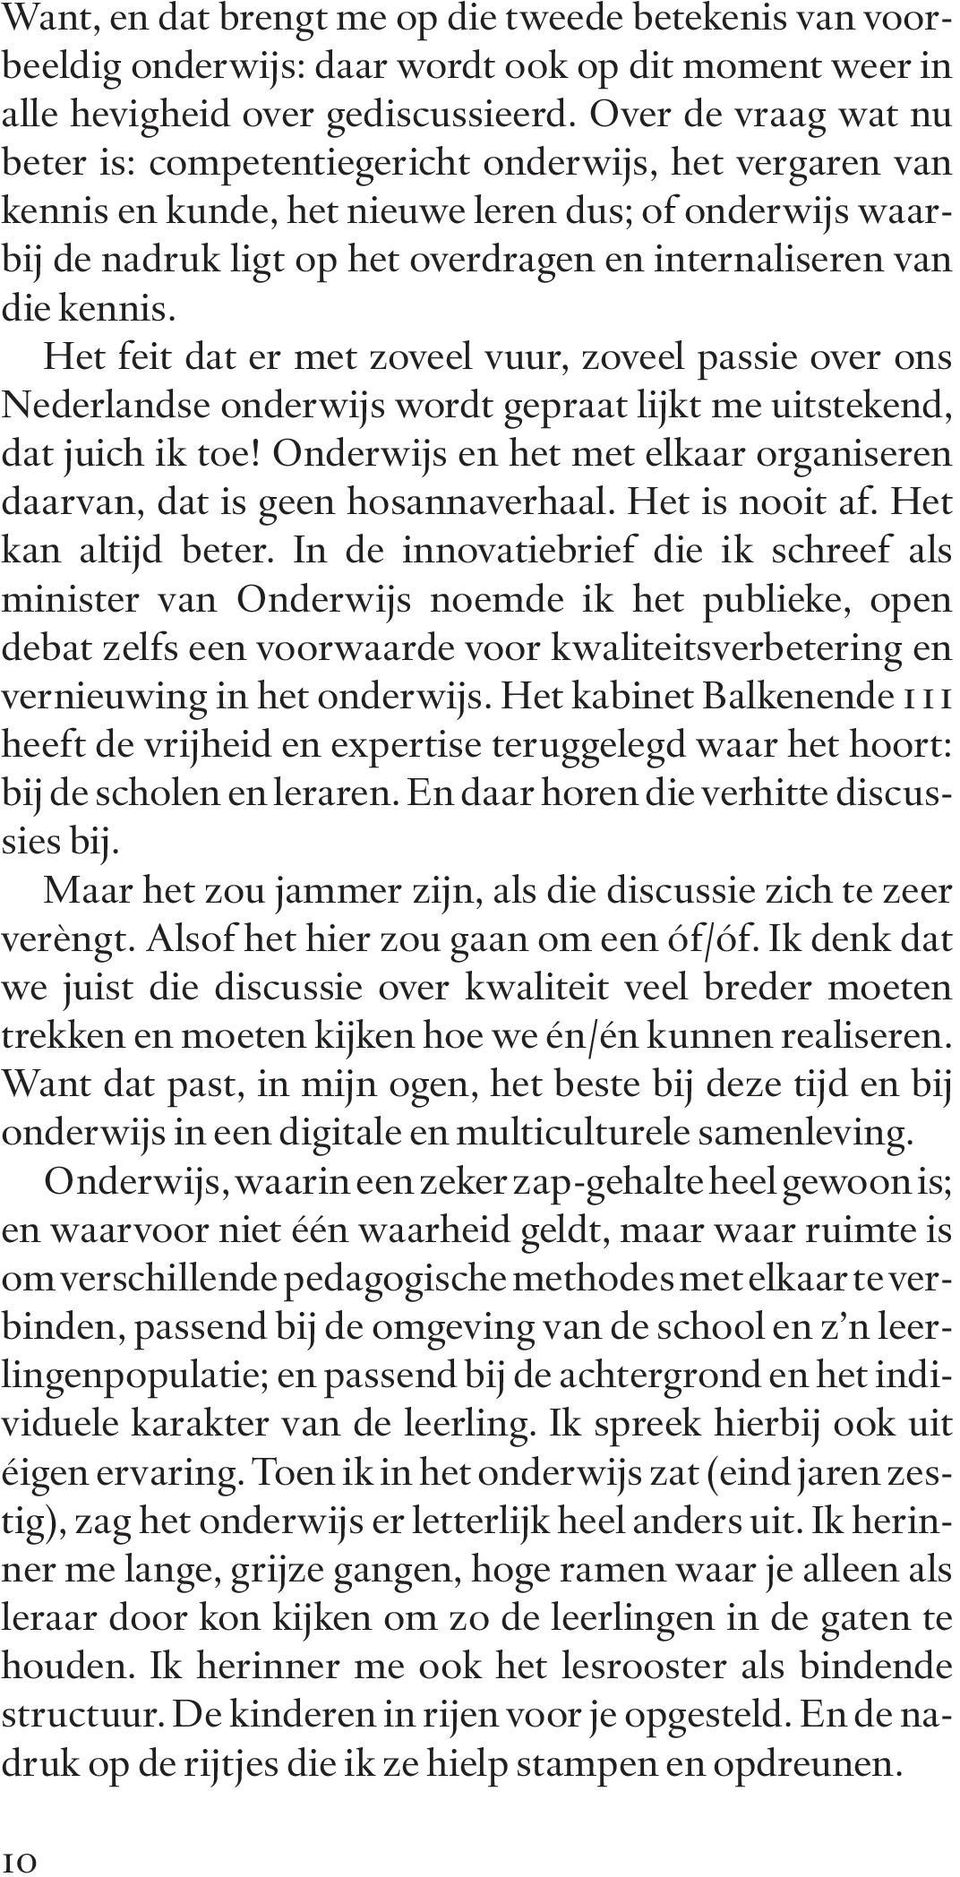 kennis. Het feit dat er met zoveel vuur, zoveel passie over ons Nederlandse onderwijs wordt gepraat lijkt me uitstekend, dat juich ik toe!